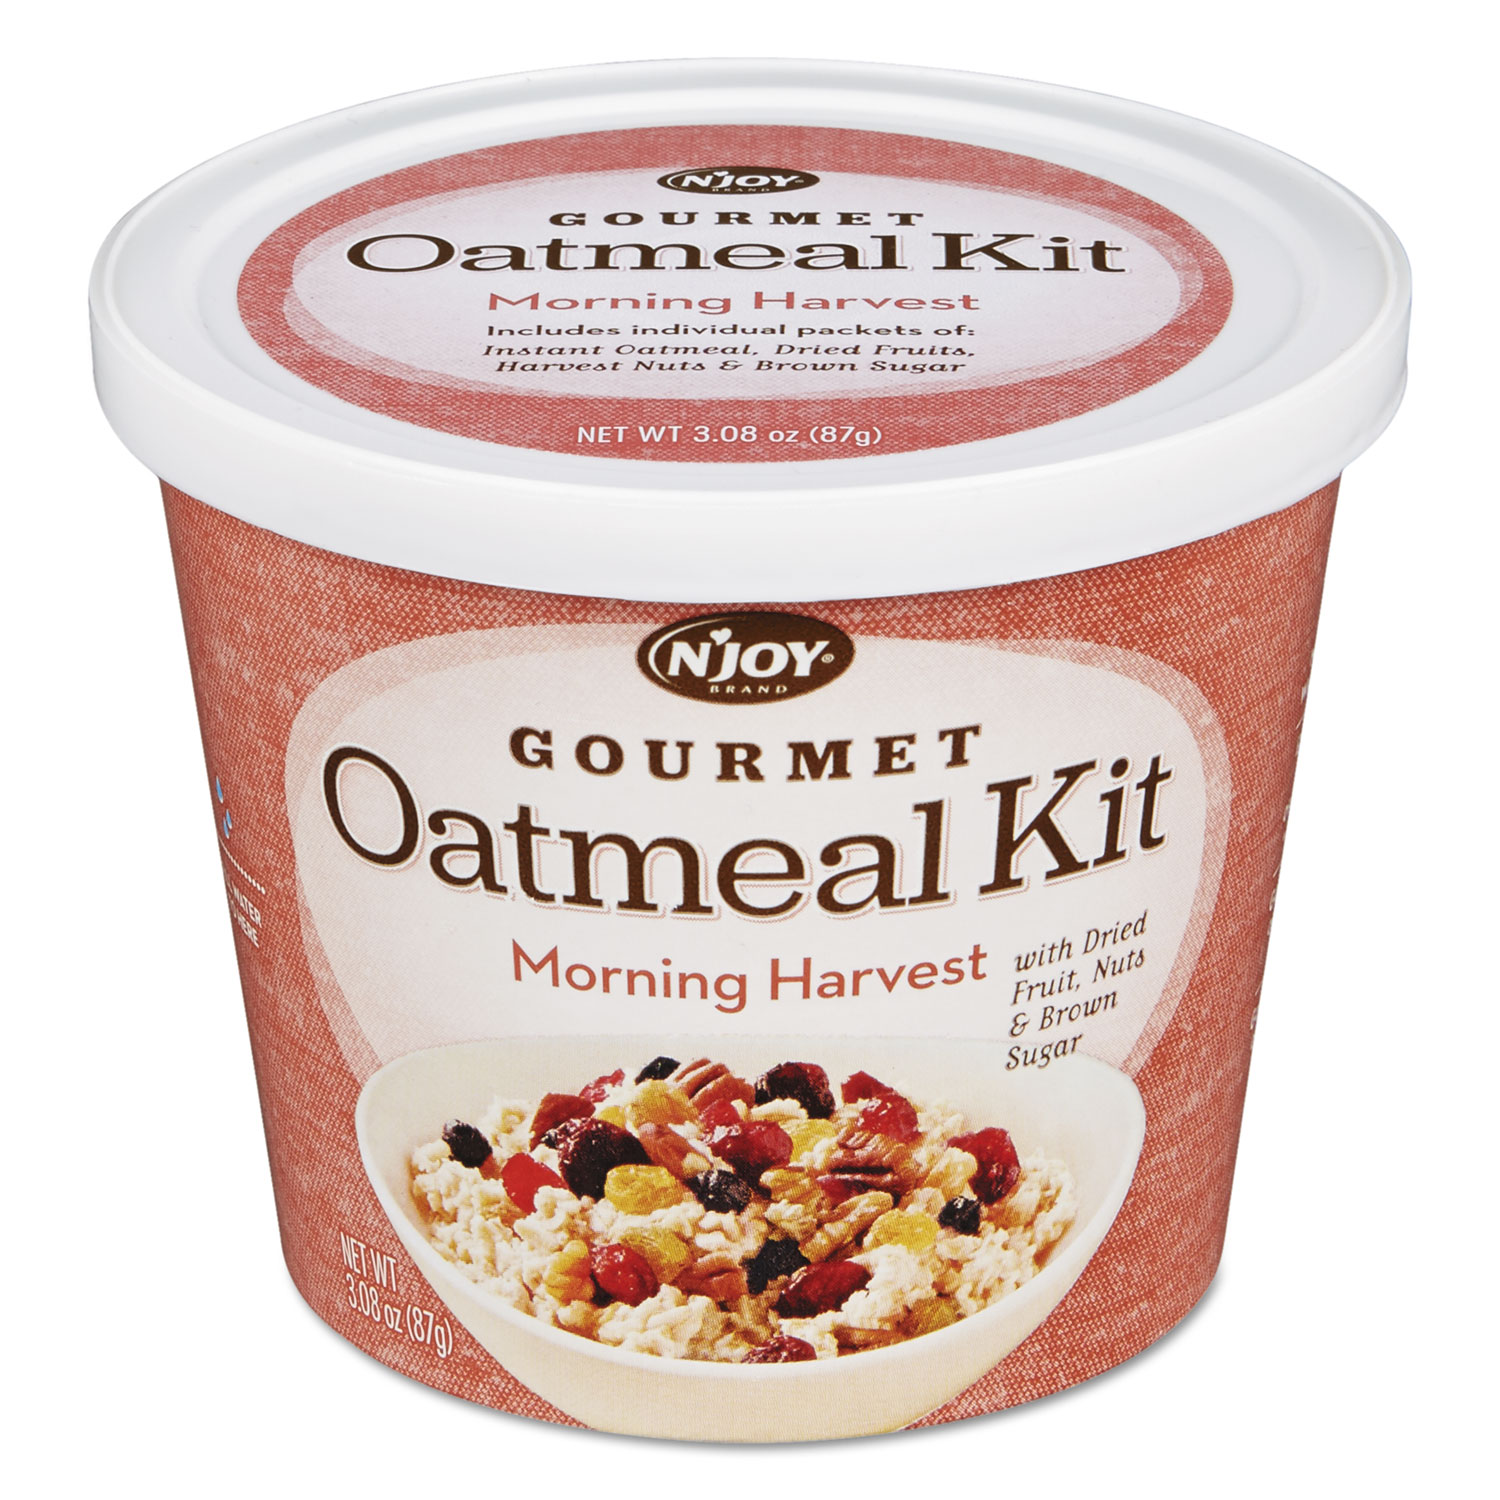 Gourmet Oatmeal Kit, Morning Harvest, 3.08 oz Bowl